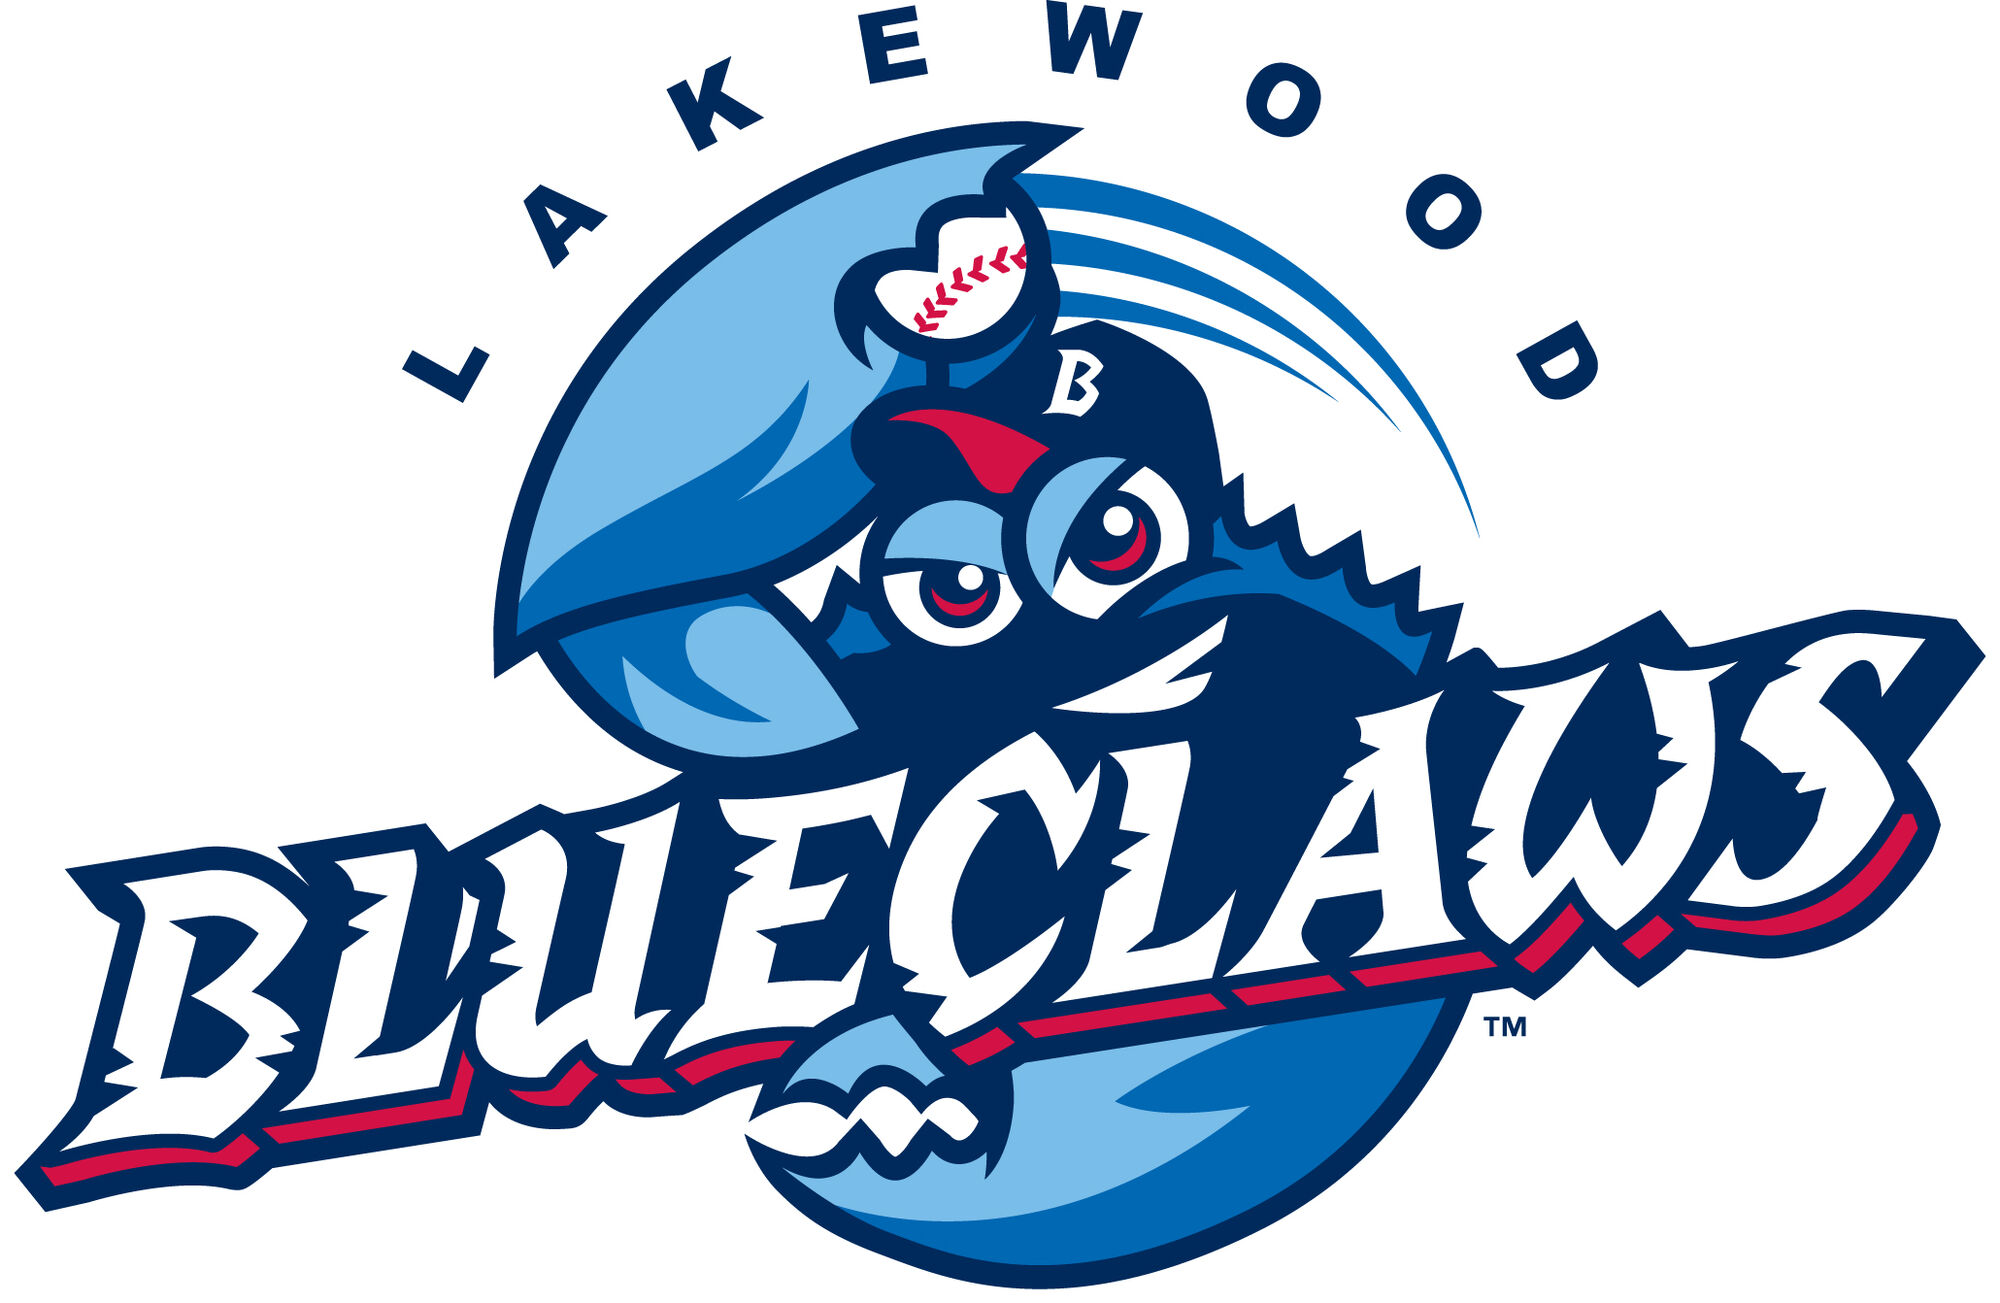 Lakewood BlueClaws Pro Sports Teams Wiki Fandom